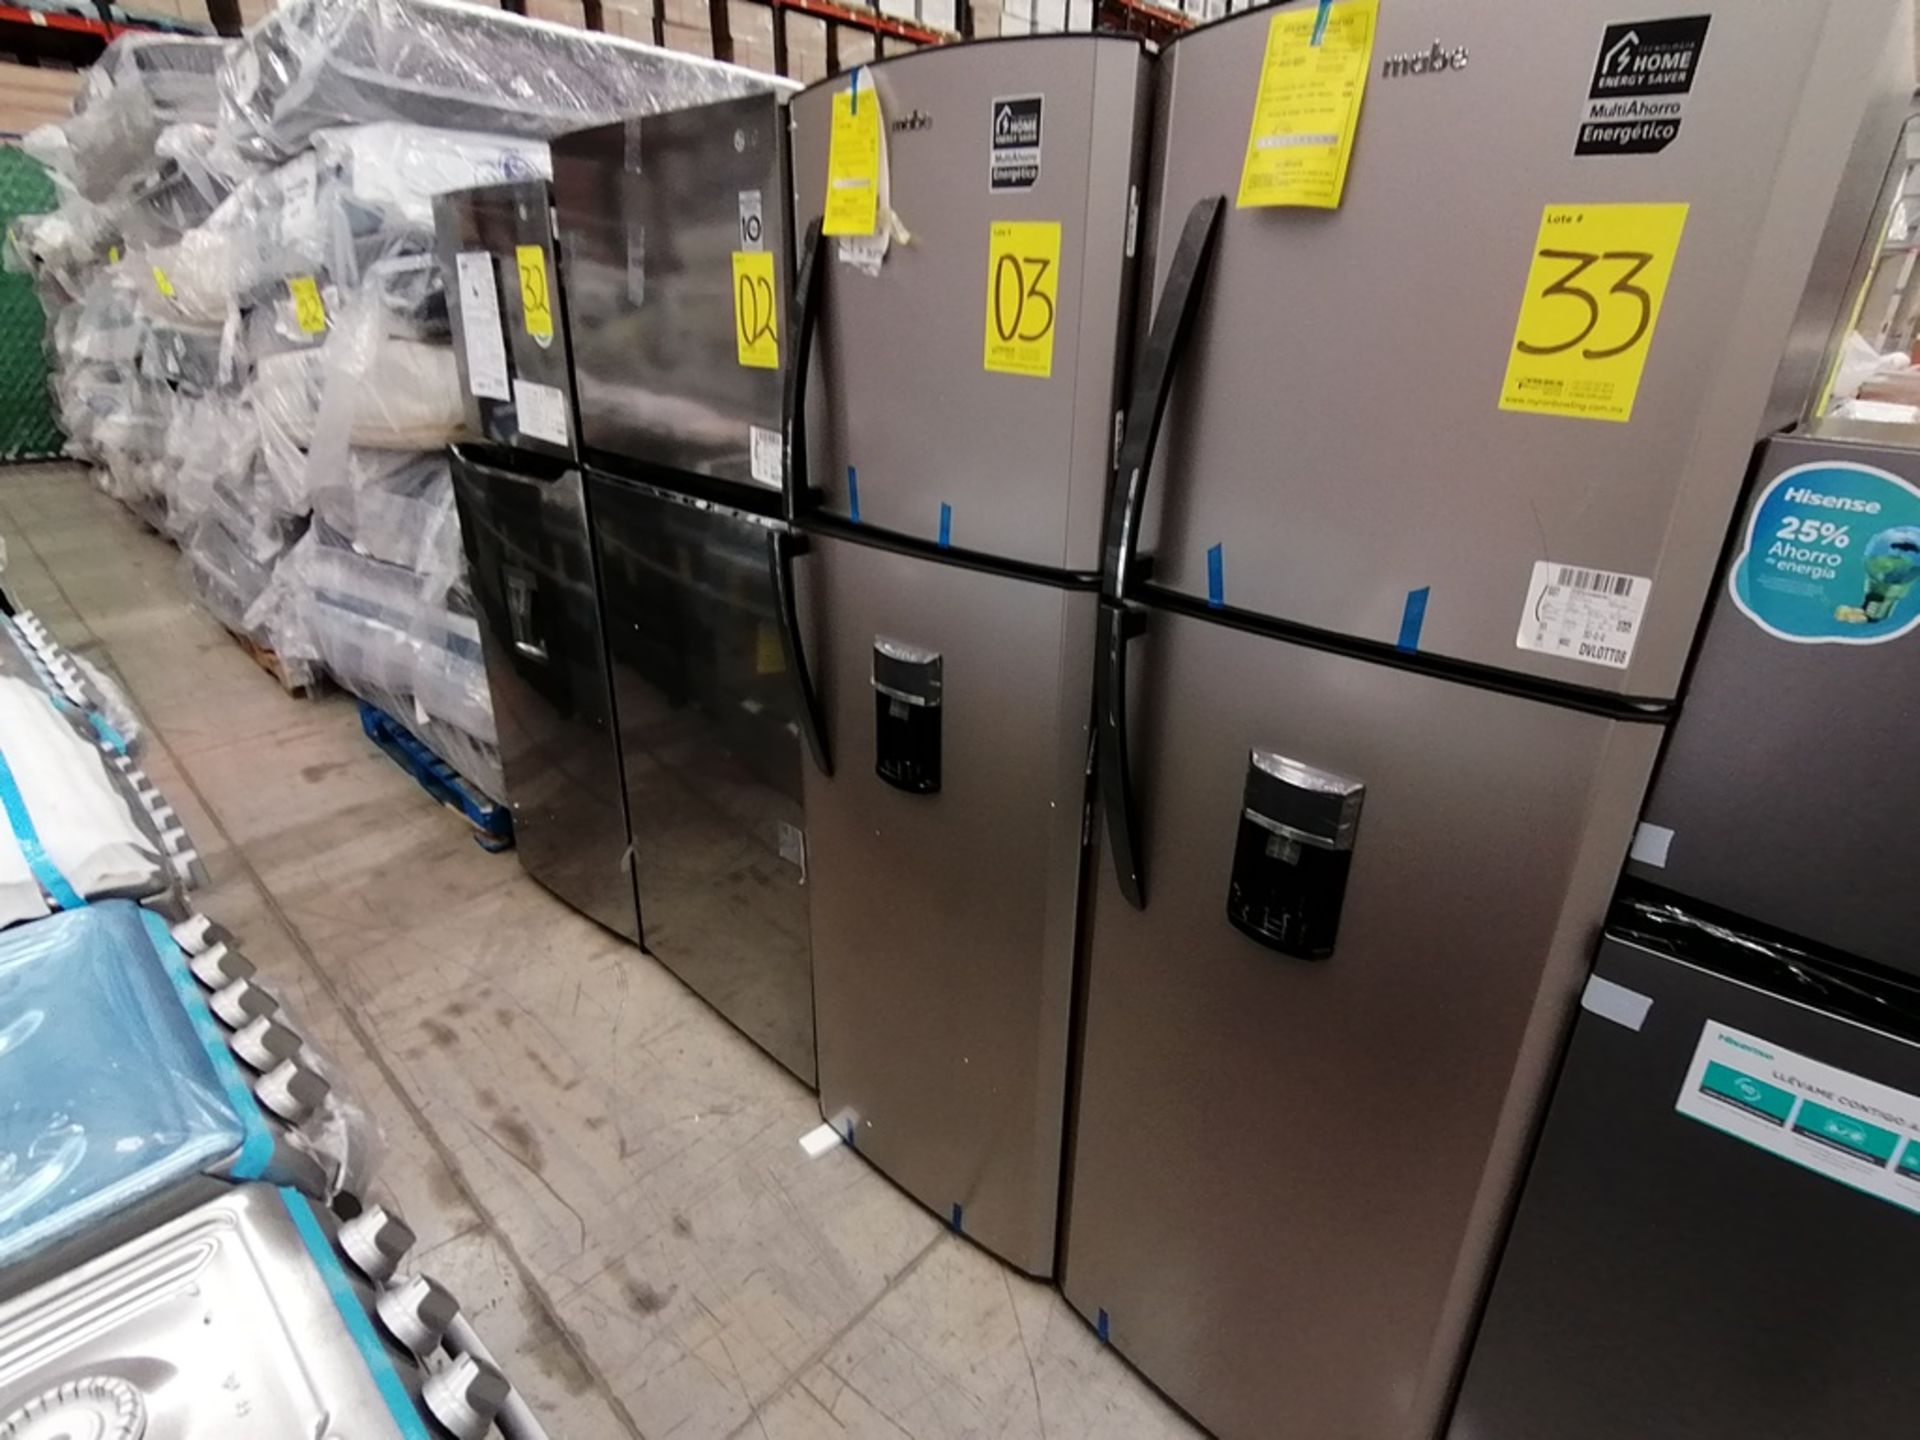 1 Refrigerador con Dispensador de Agua Marca Mabe, Color Gris, Modelo RMA300FJMR, Serie 2112B707142